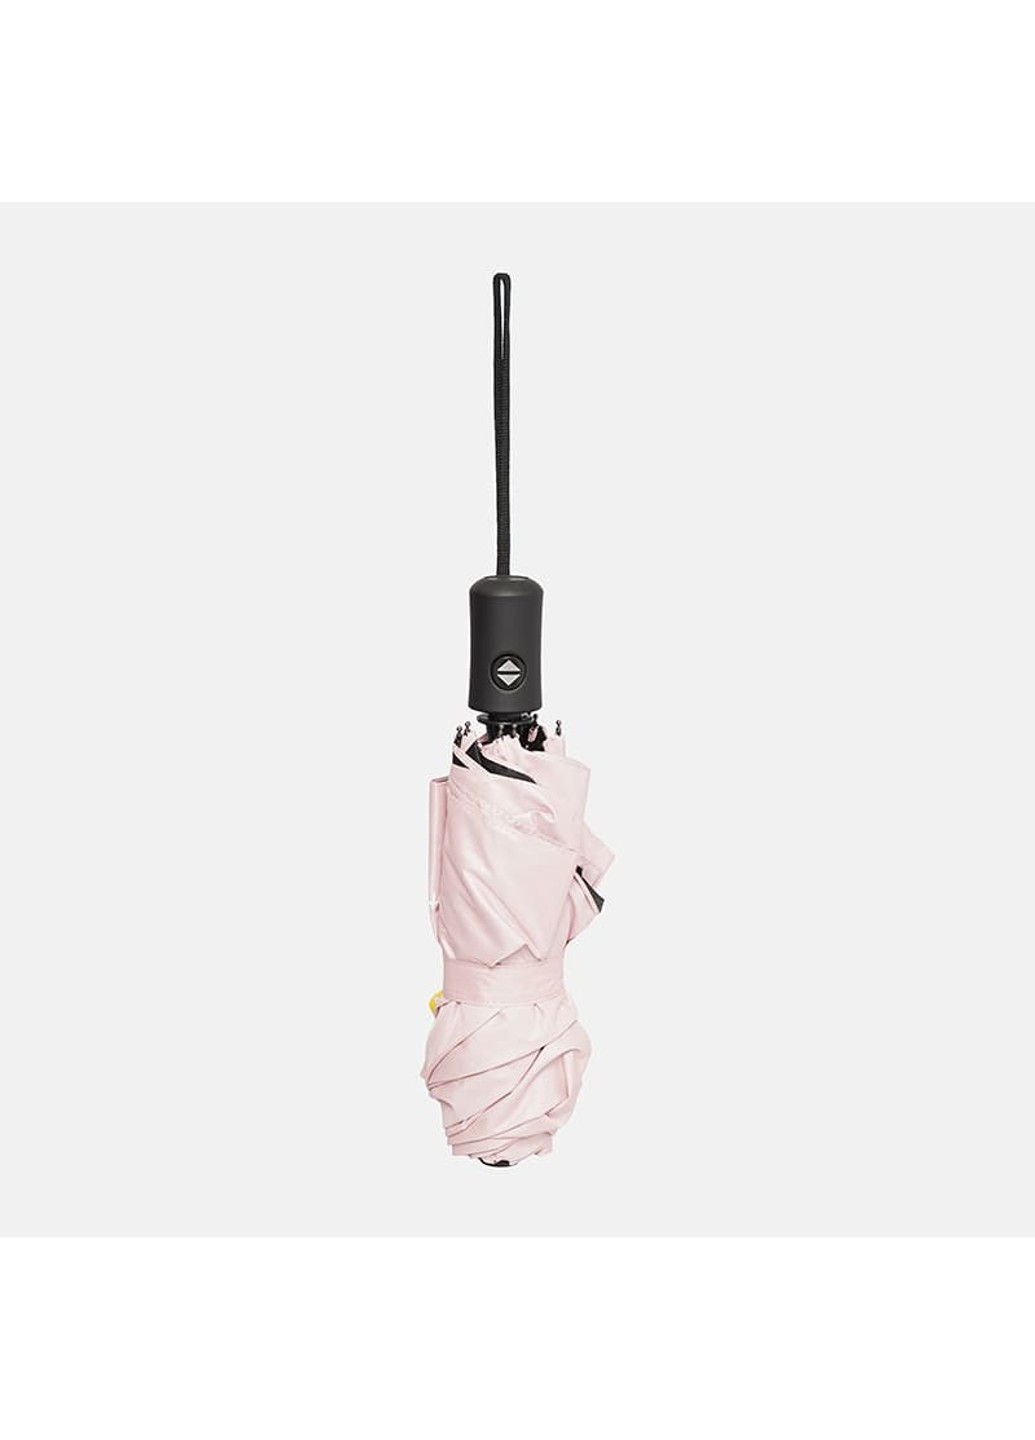 Автоматична парасолька CV13123ROMp-pink Monsen (266143819)